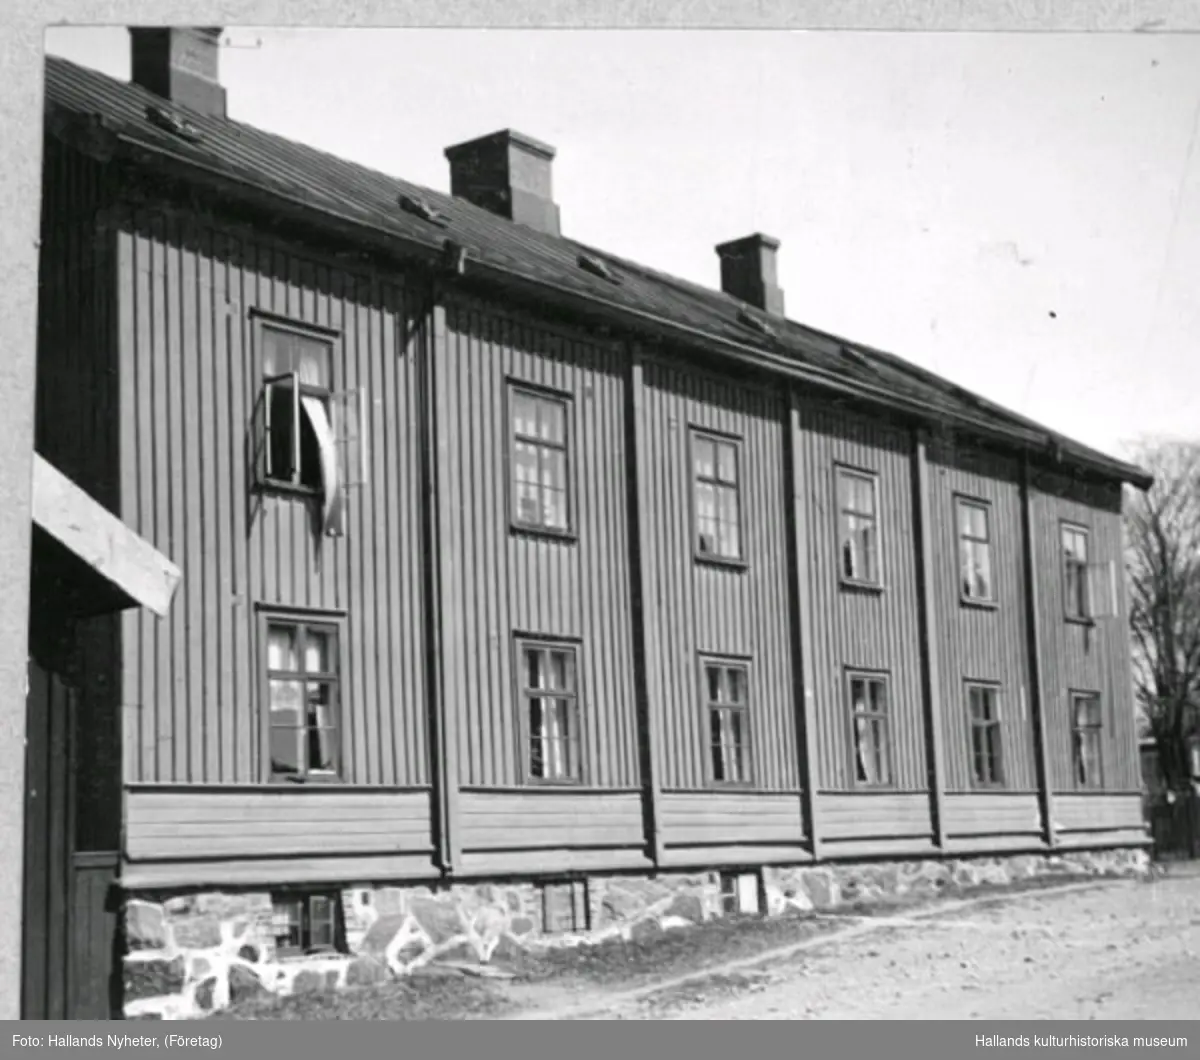 Äldreboende. Kv Åkaren 13. Bostad. Bilden har varit publicerad i Hallands Nyheter, 1947-12-04, "Pensionärshemsbygget  på "Reträtten" har påbörjats". Byggnaden, som uppfördes 1864 efter den stora stadsbranden året innan, fungerade som nödbostäder för de hårdast drabbade. Ganska snart efter kom det att fungera som ett fattighus. Det revs1947 och på rivningstomten uppförde staden sedan pensionärshem med 48 små lägenheter.